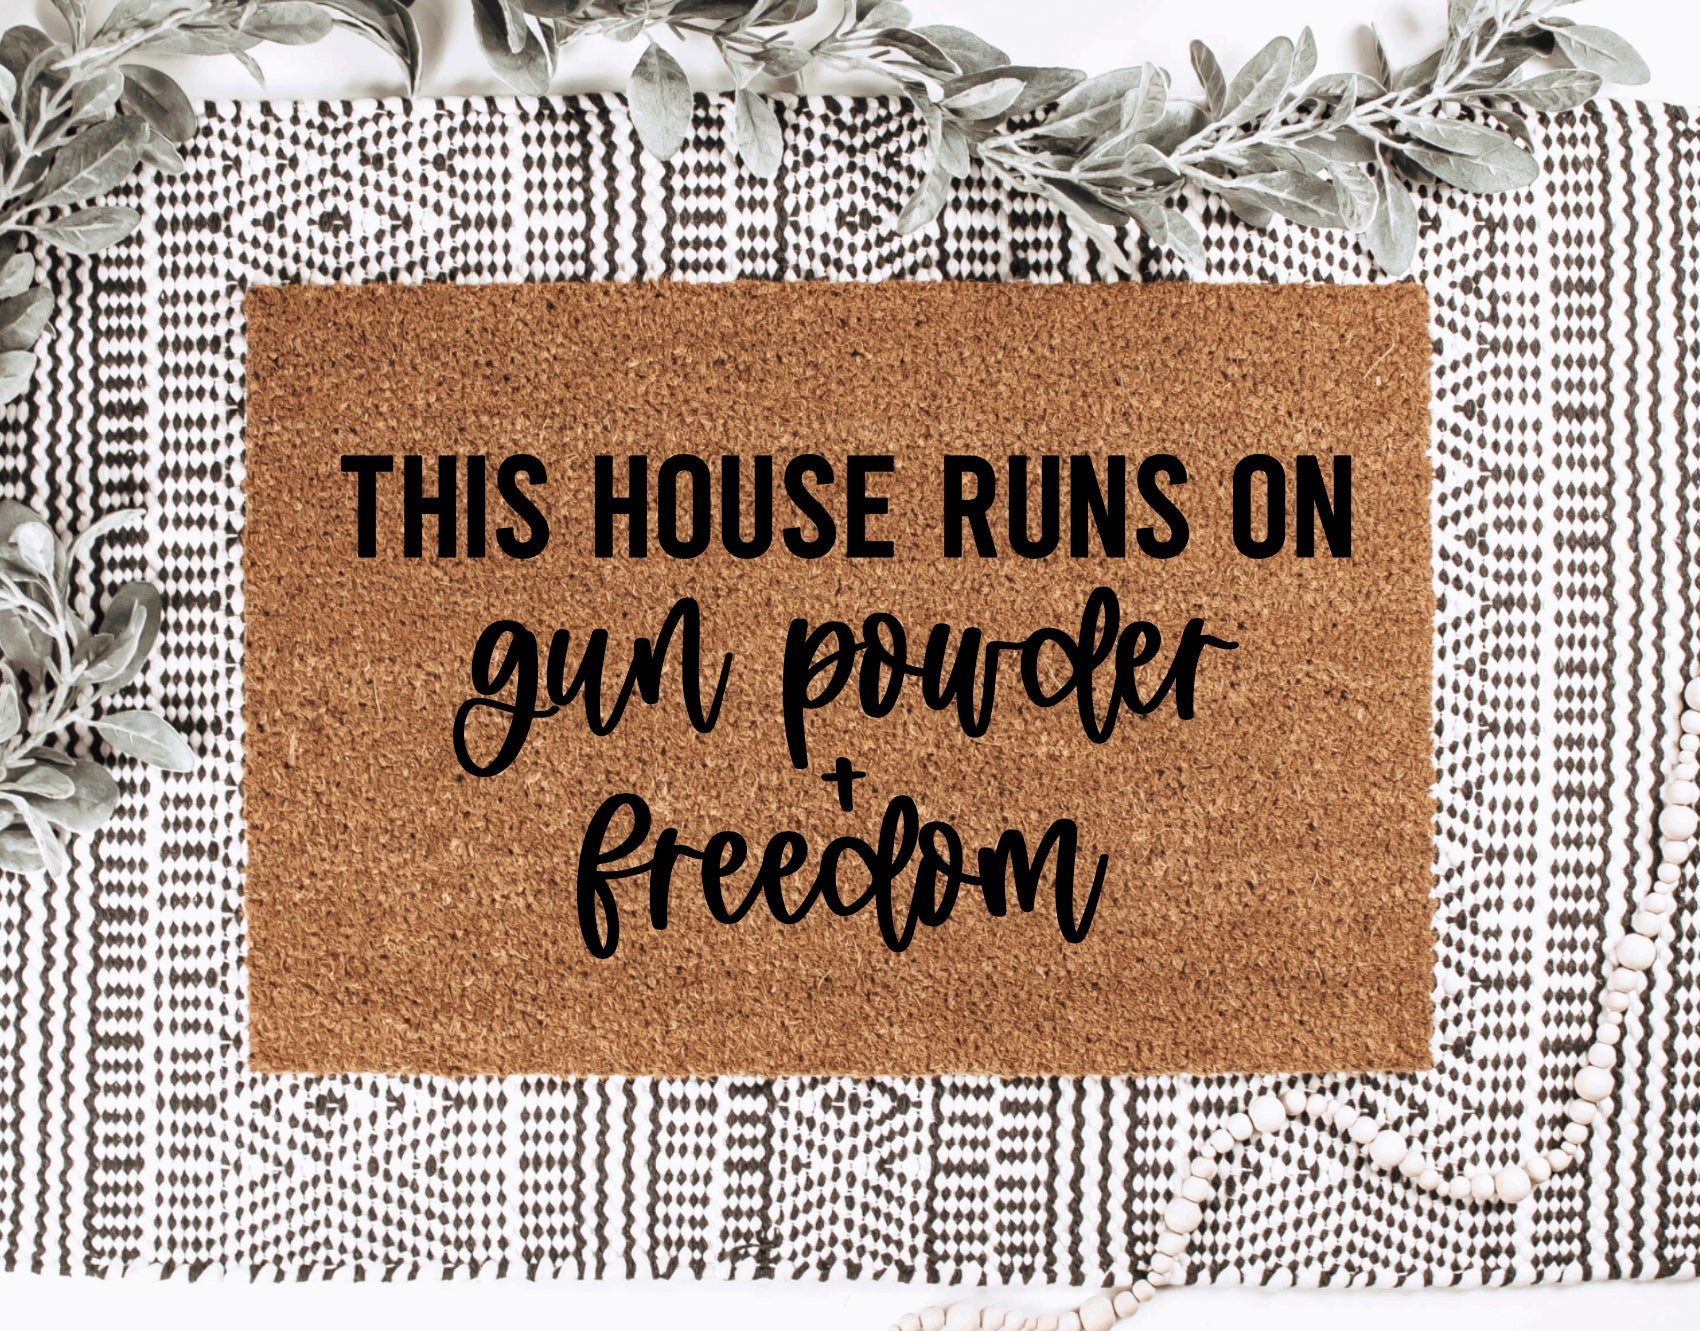 This House Runs On Gun Powder + Freedom